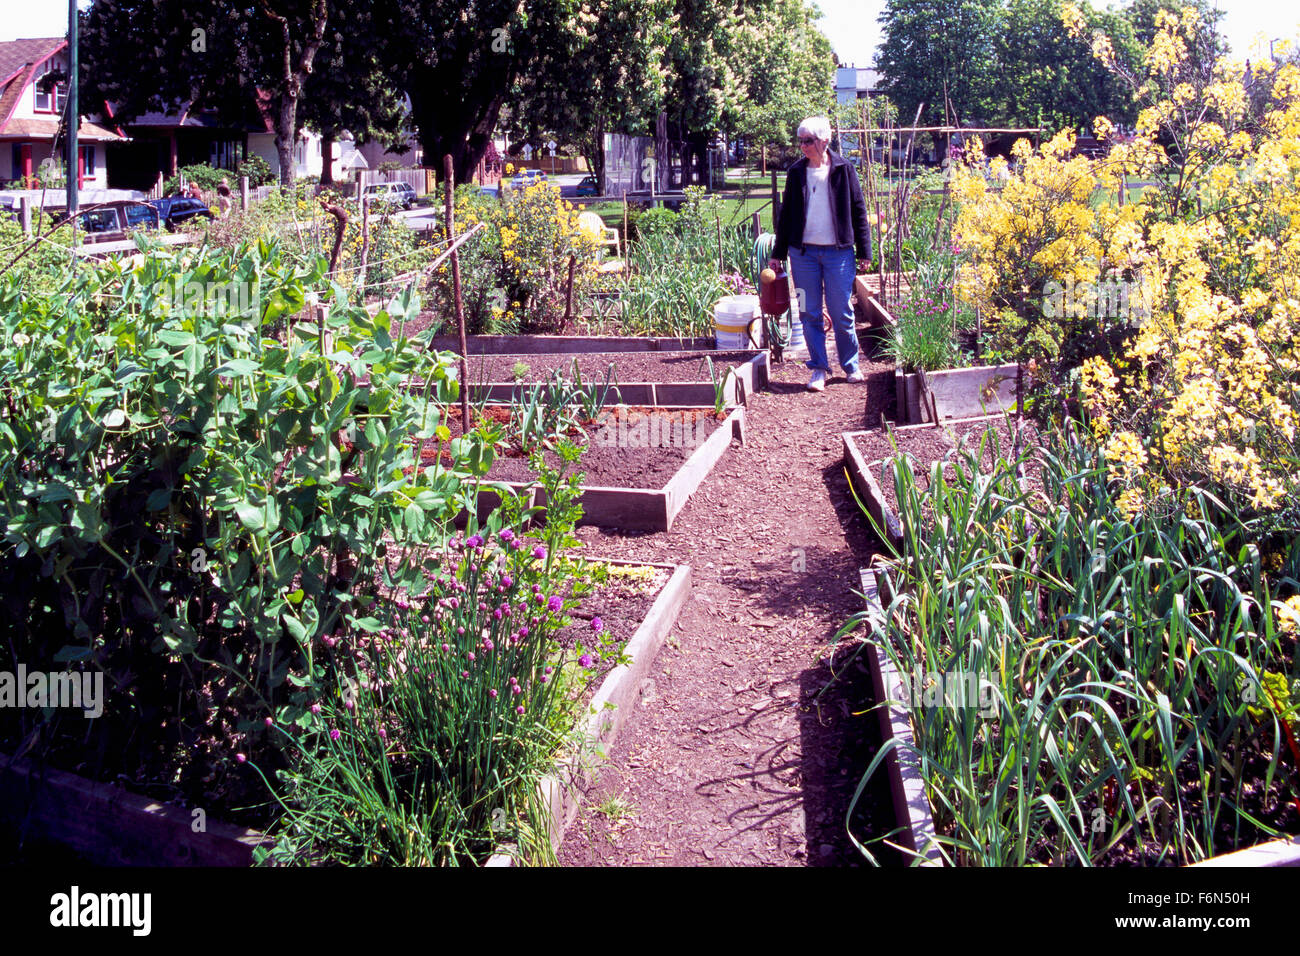 Jardin communautaire, les jardins urbains, Vancouver, BC - Colombie-Britannique, Canada - Ville durable, attribution de jardinage Printemps Banque D'Images